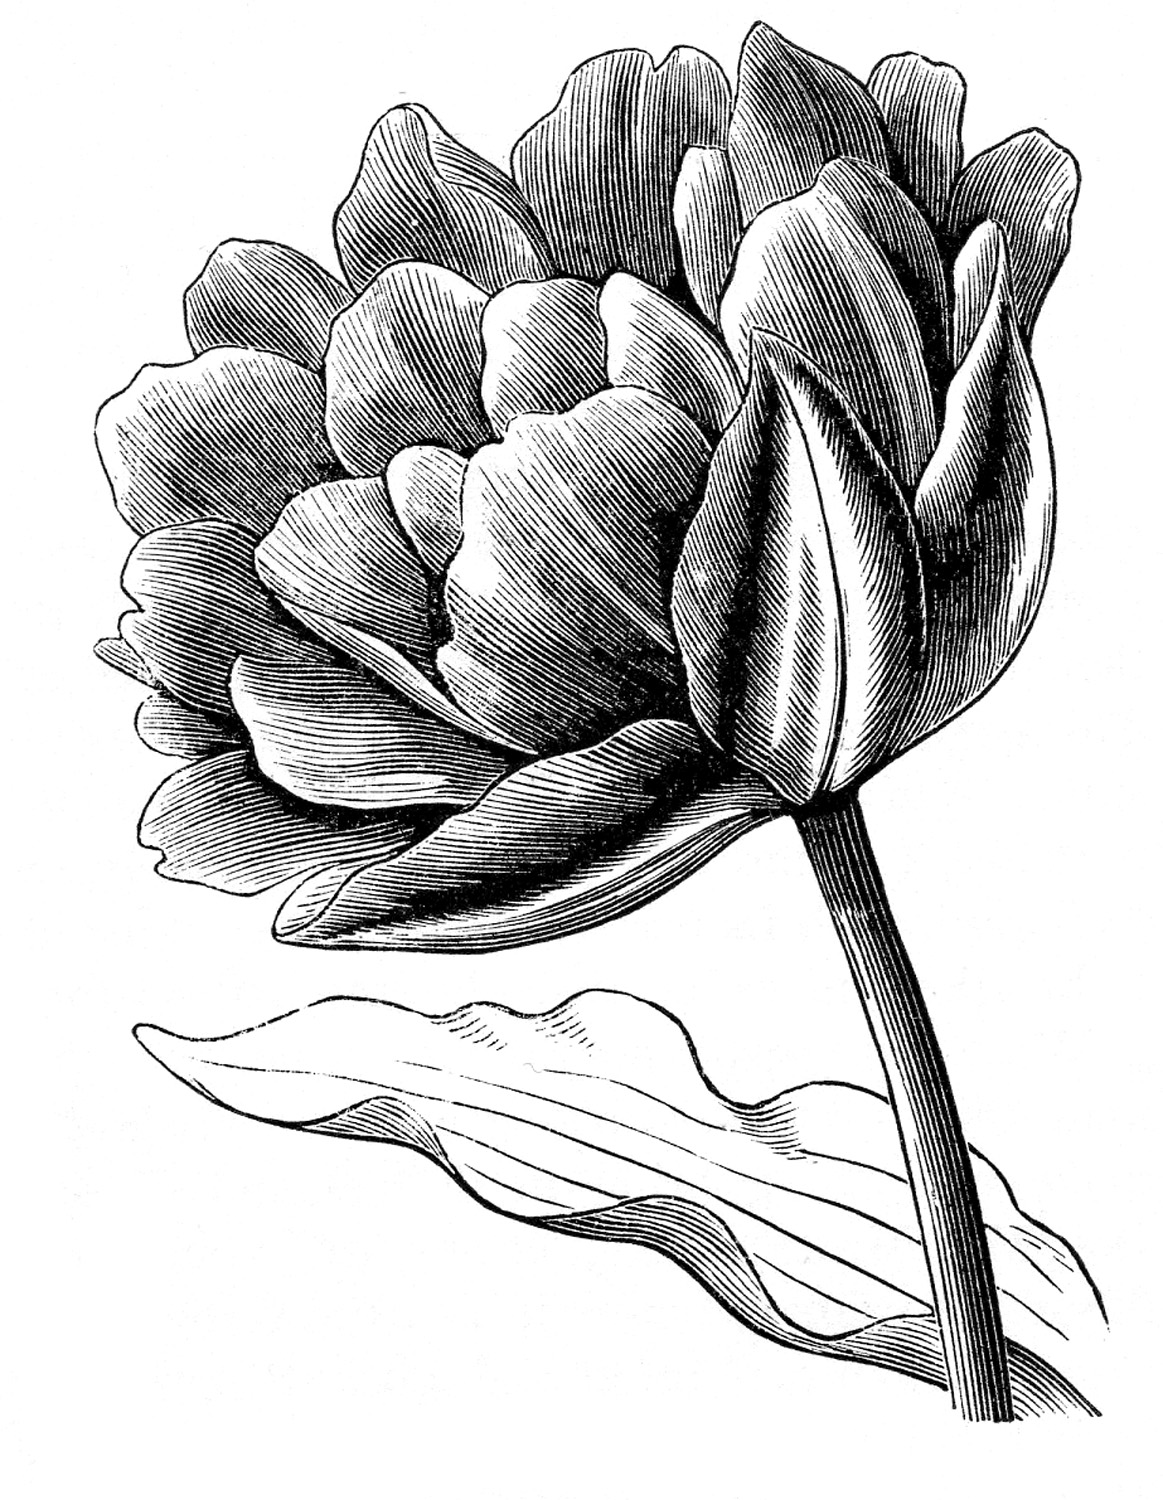 Tulip clipart